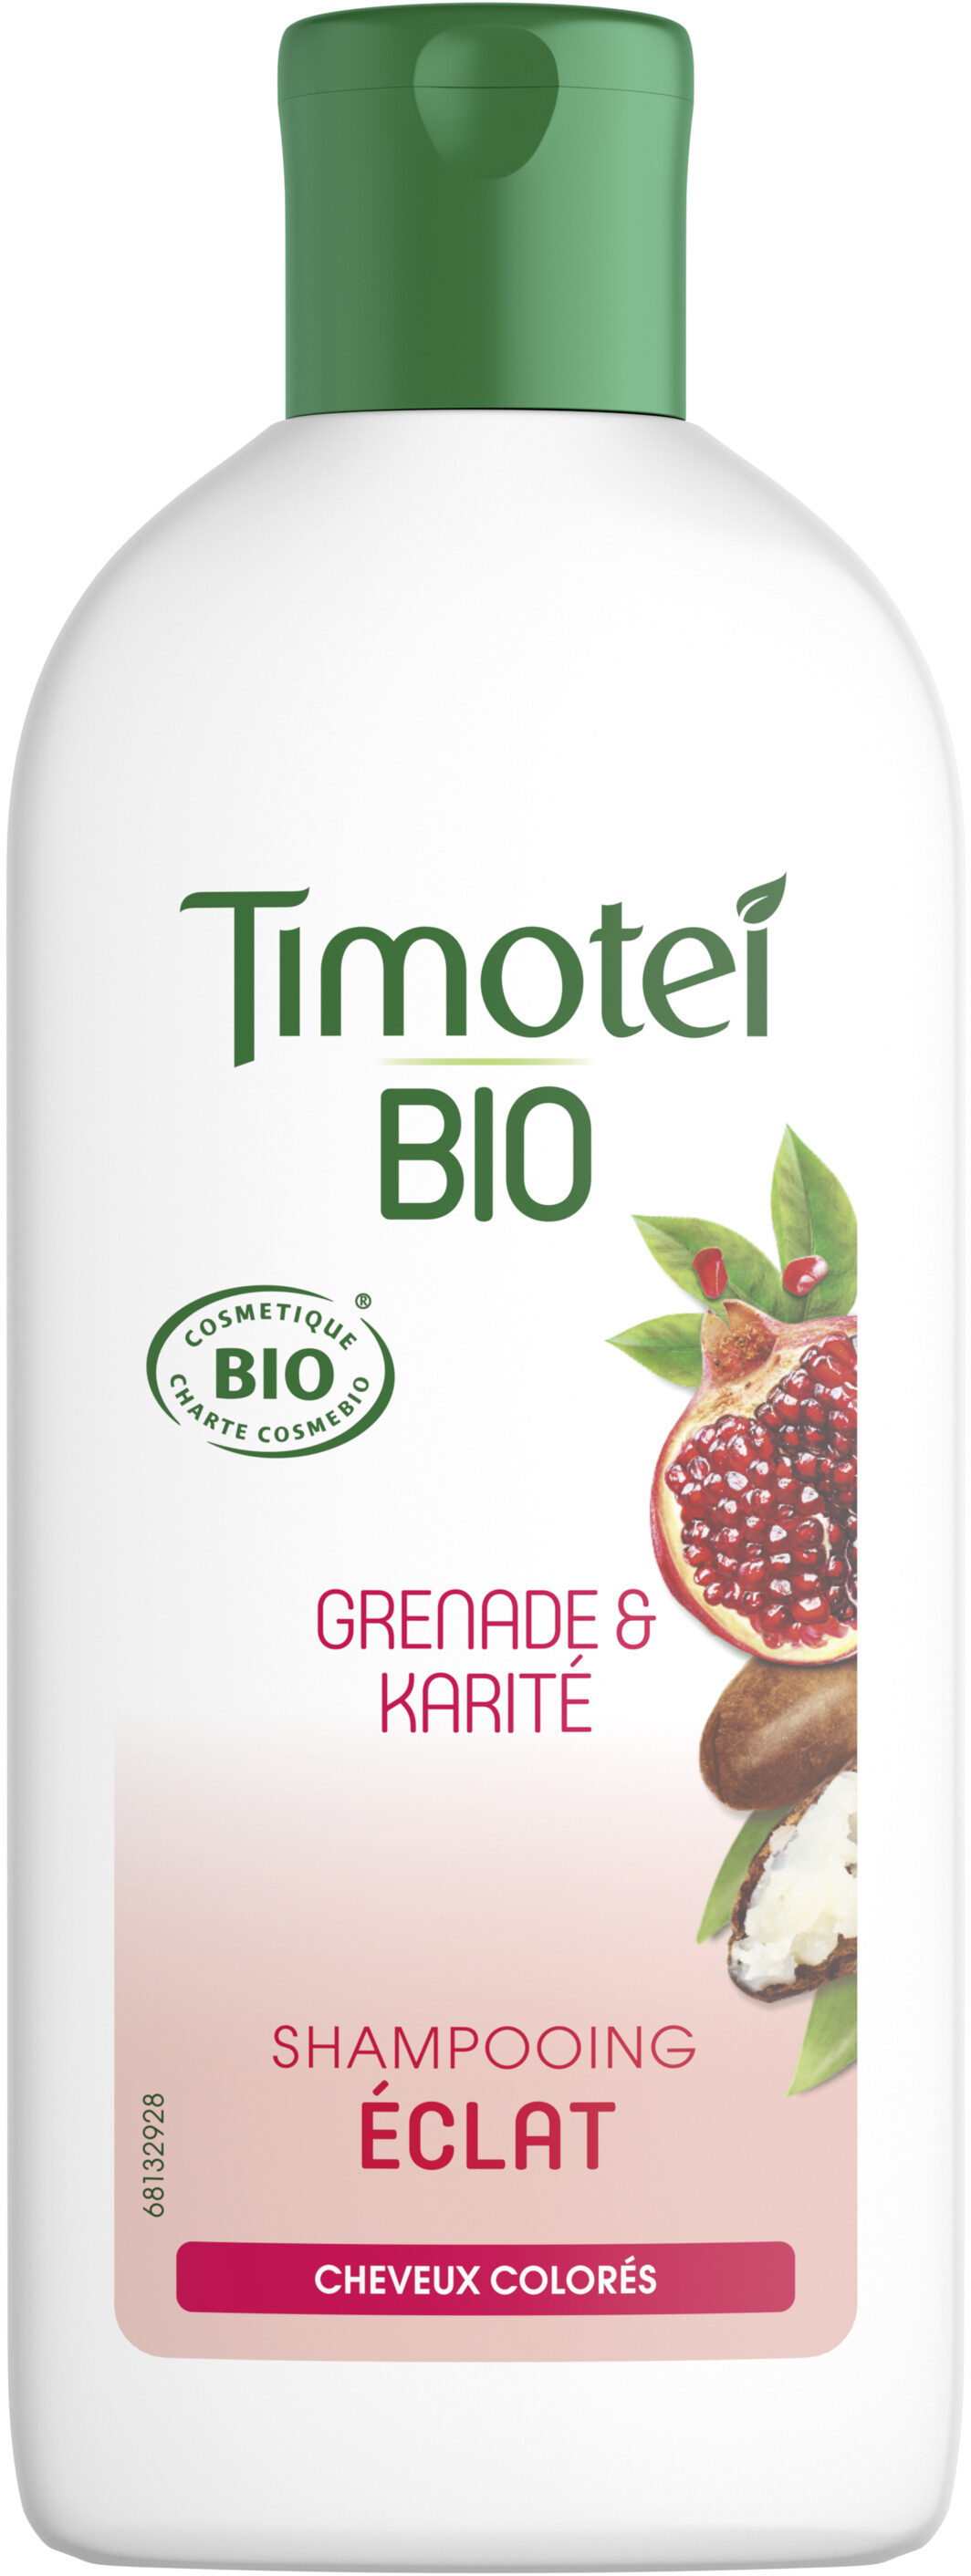 Timotei Bio Shampooing Femme Éclat Cheveux colorés Grenade & Karité 250ml - Tuote - fr